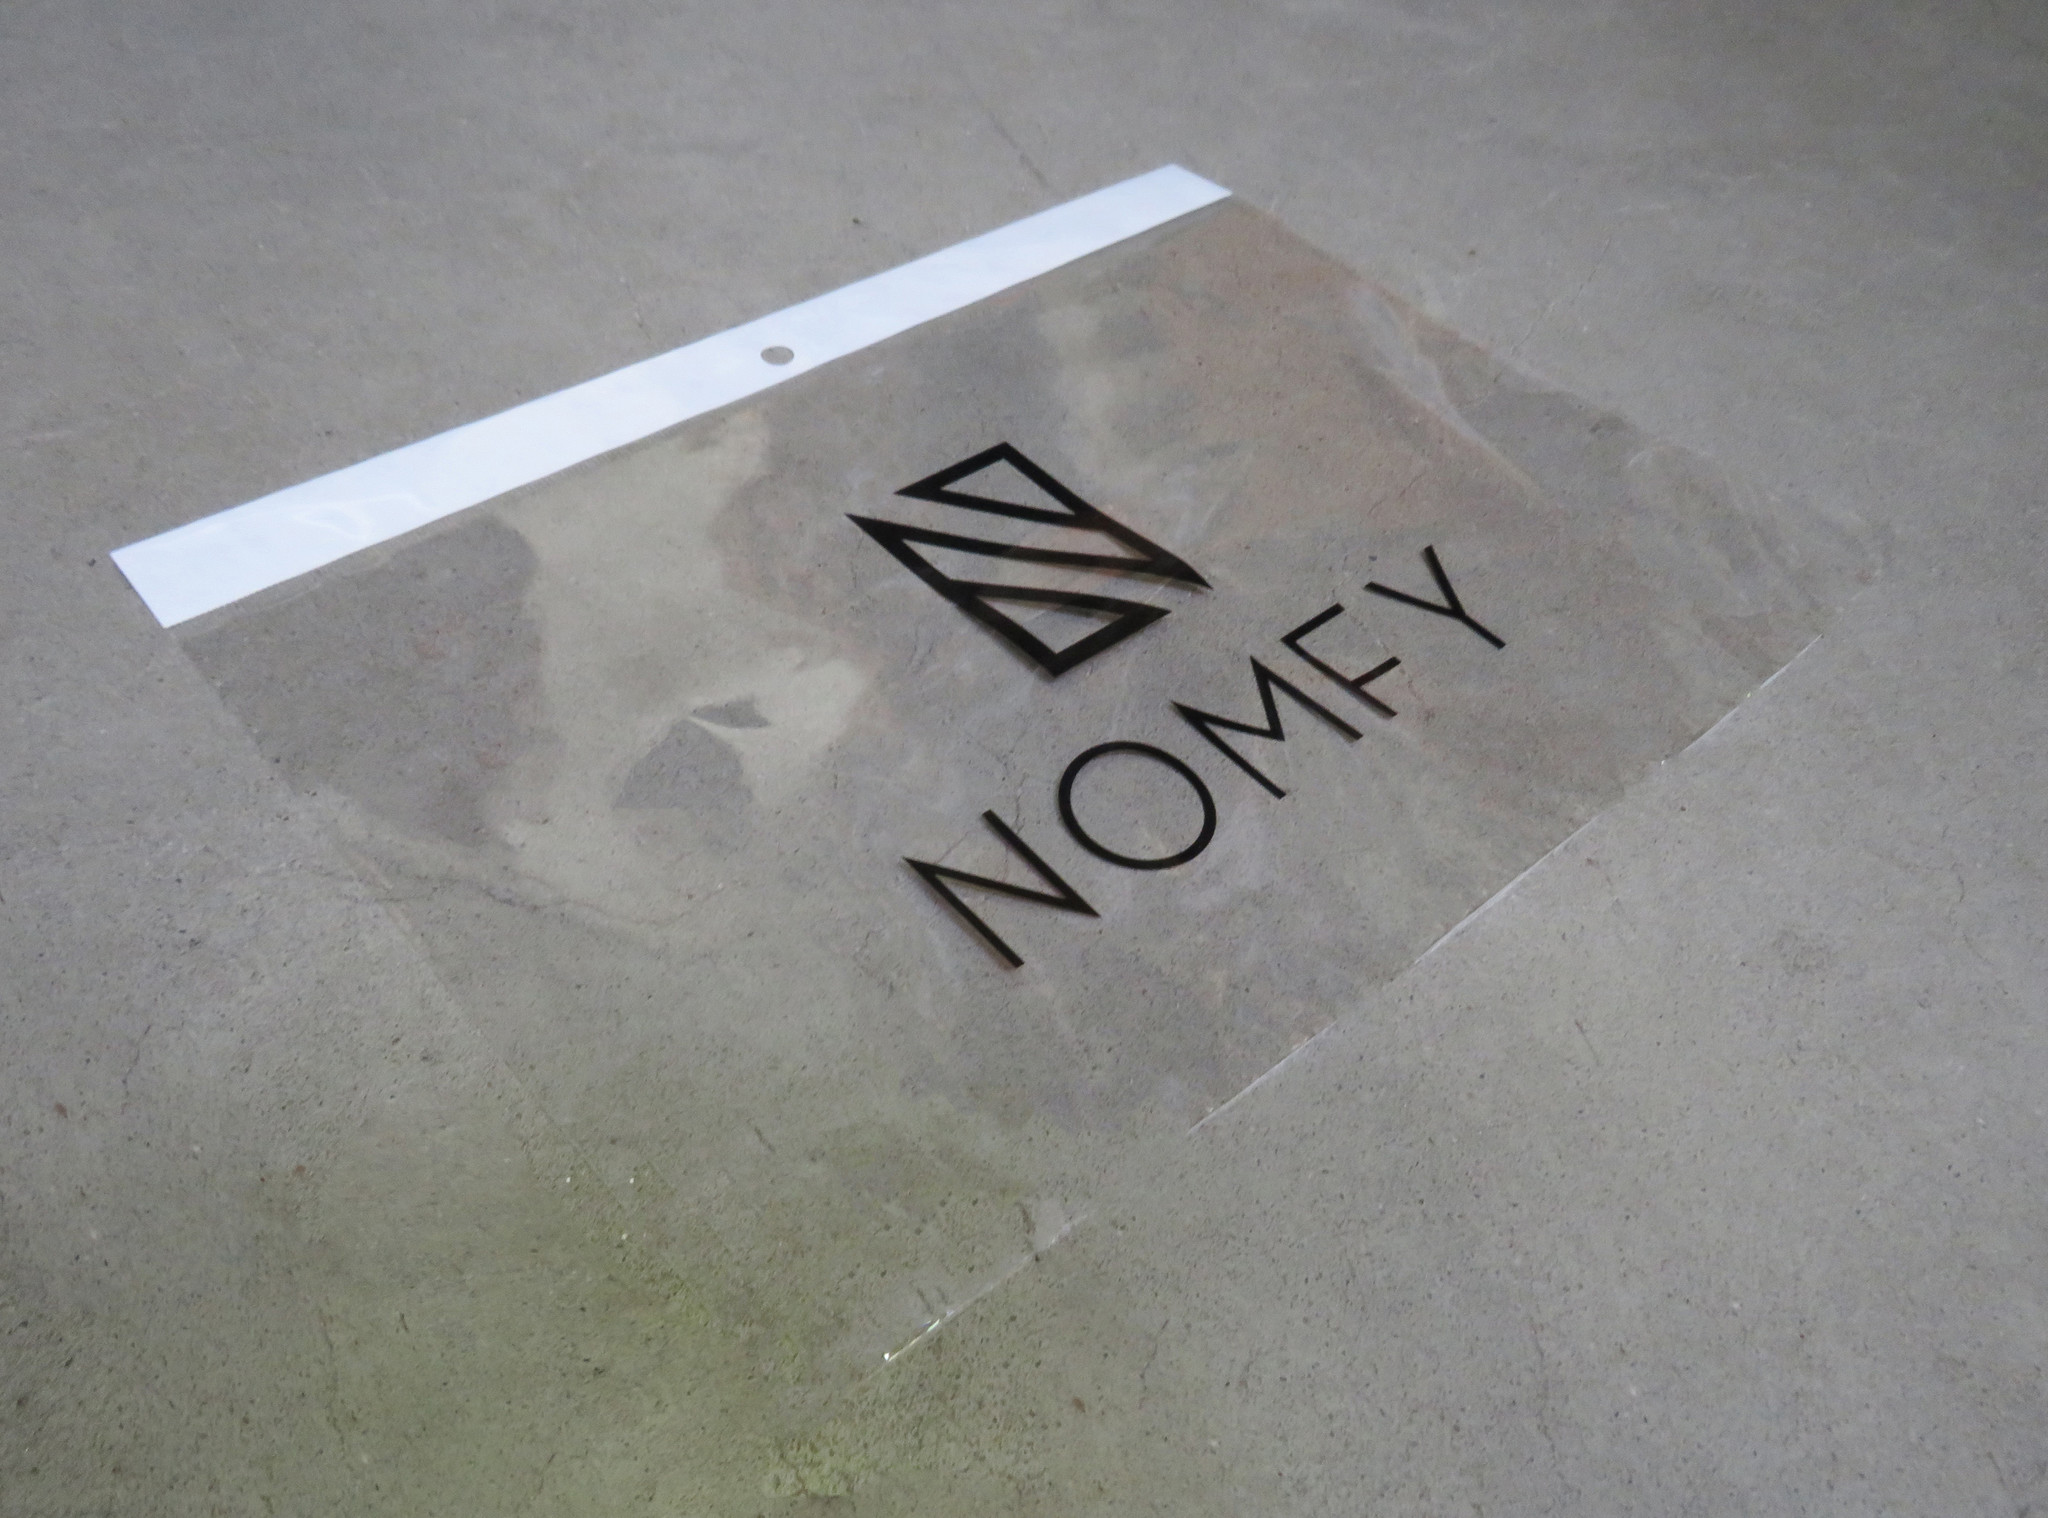 Nomfy Nomfy iPad Pro 11 inch (2020) Screenprotector